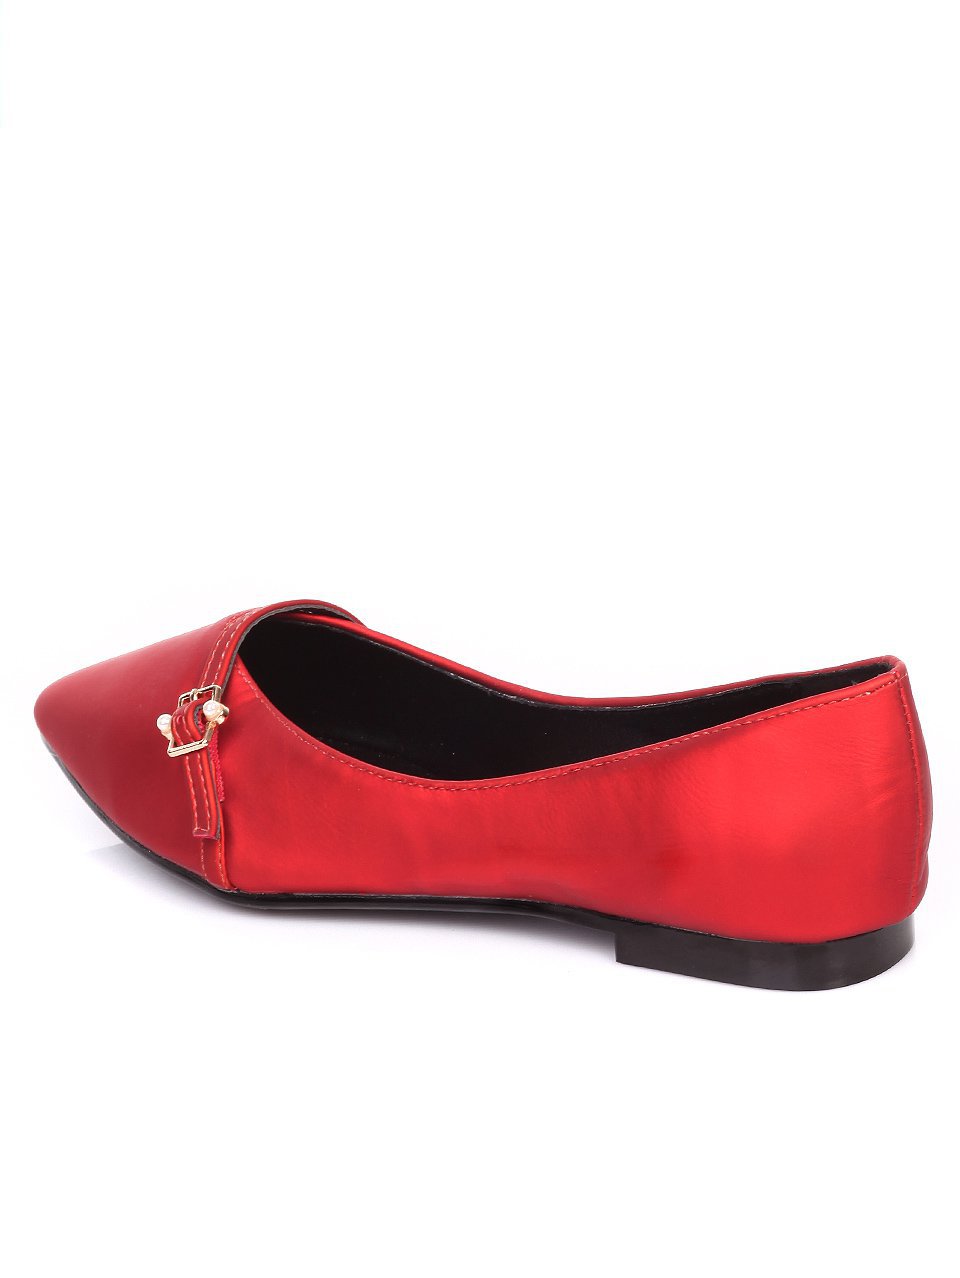 Ежедневни дамски обувки в червено 3B-17247 red